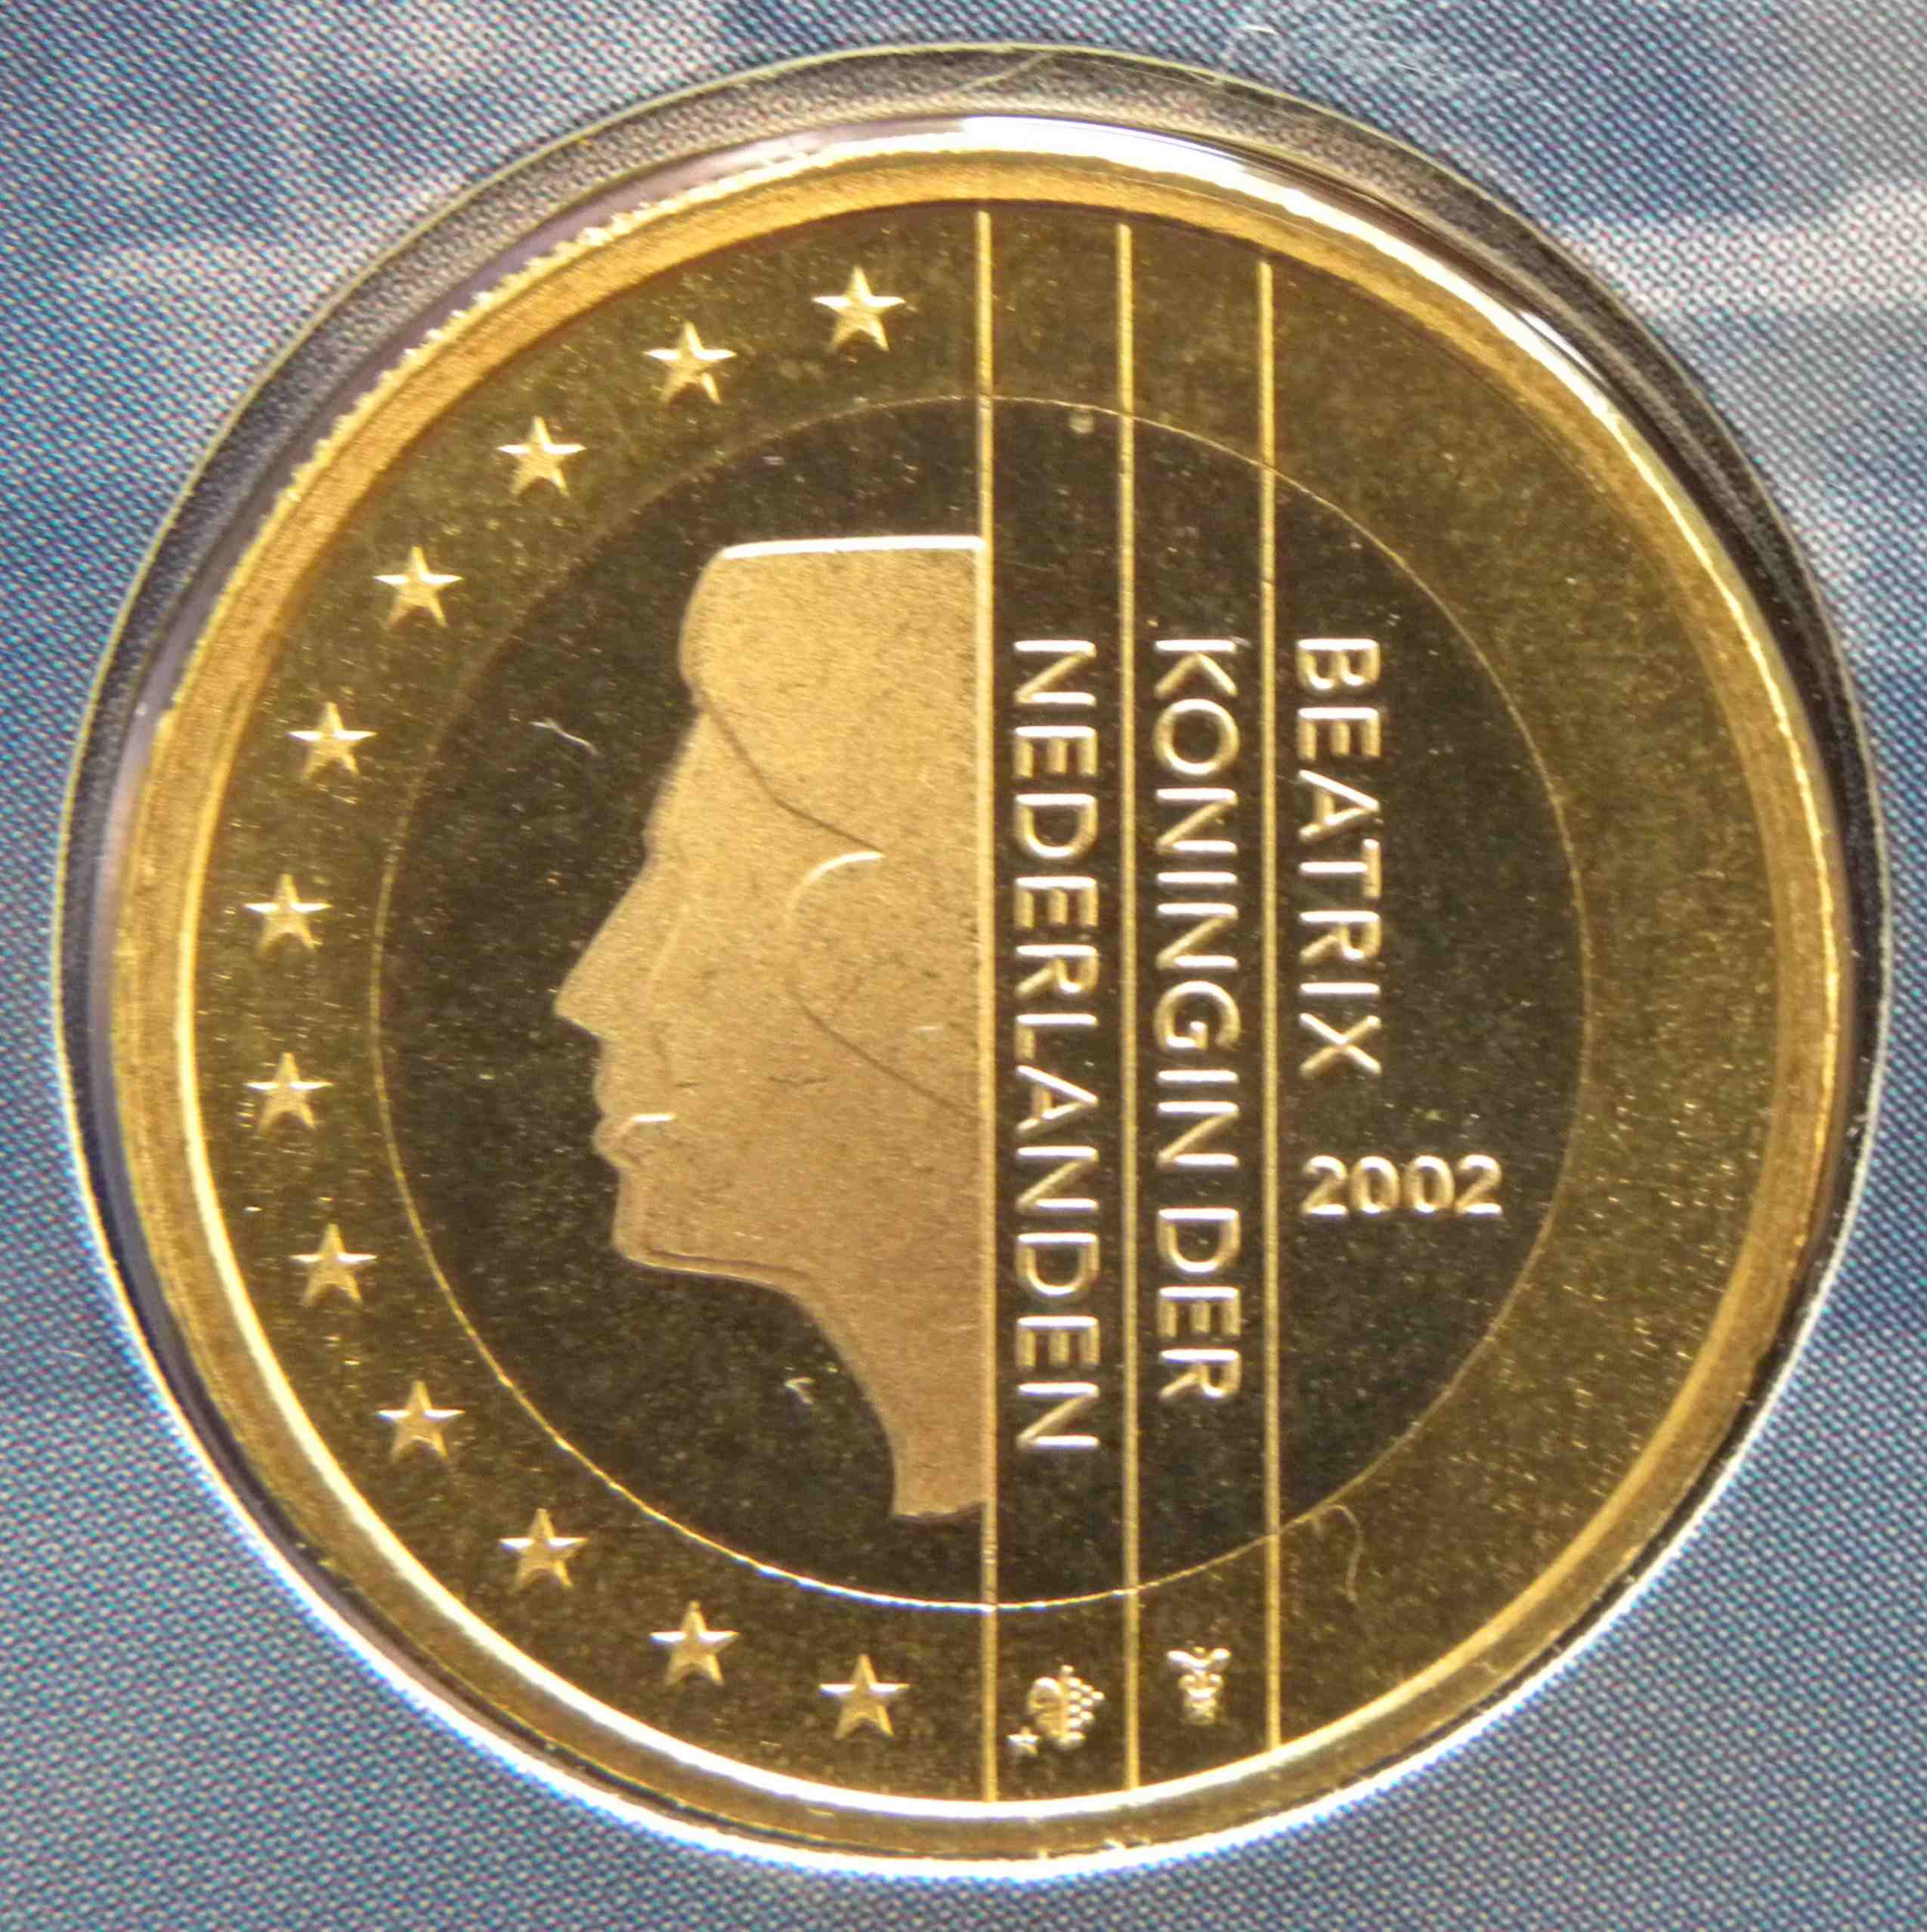 Niederlande 1 Euro Münze 2002 - euro-muenzen.tv - Der Online Euromünzen